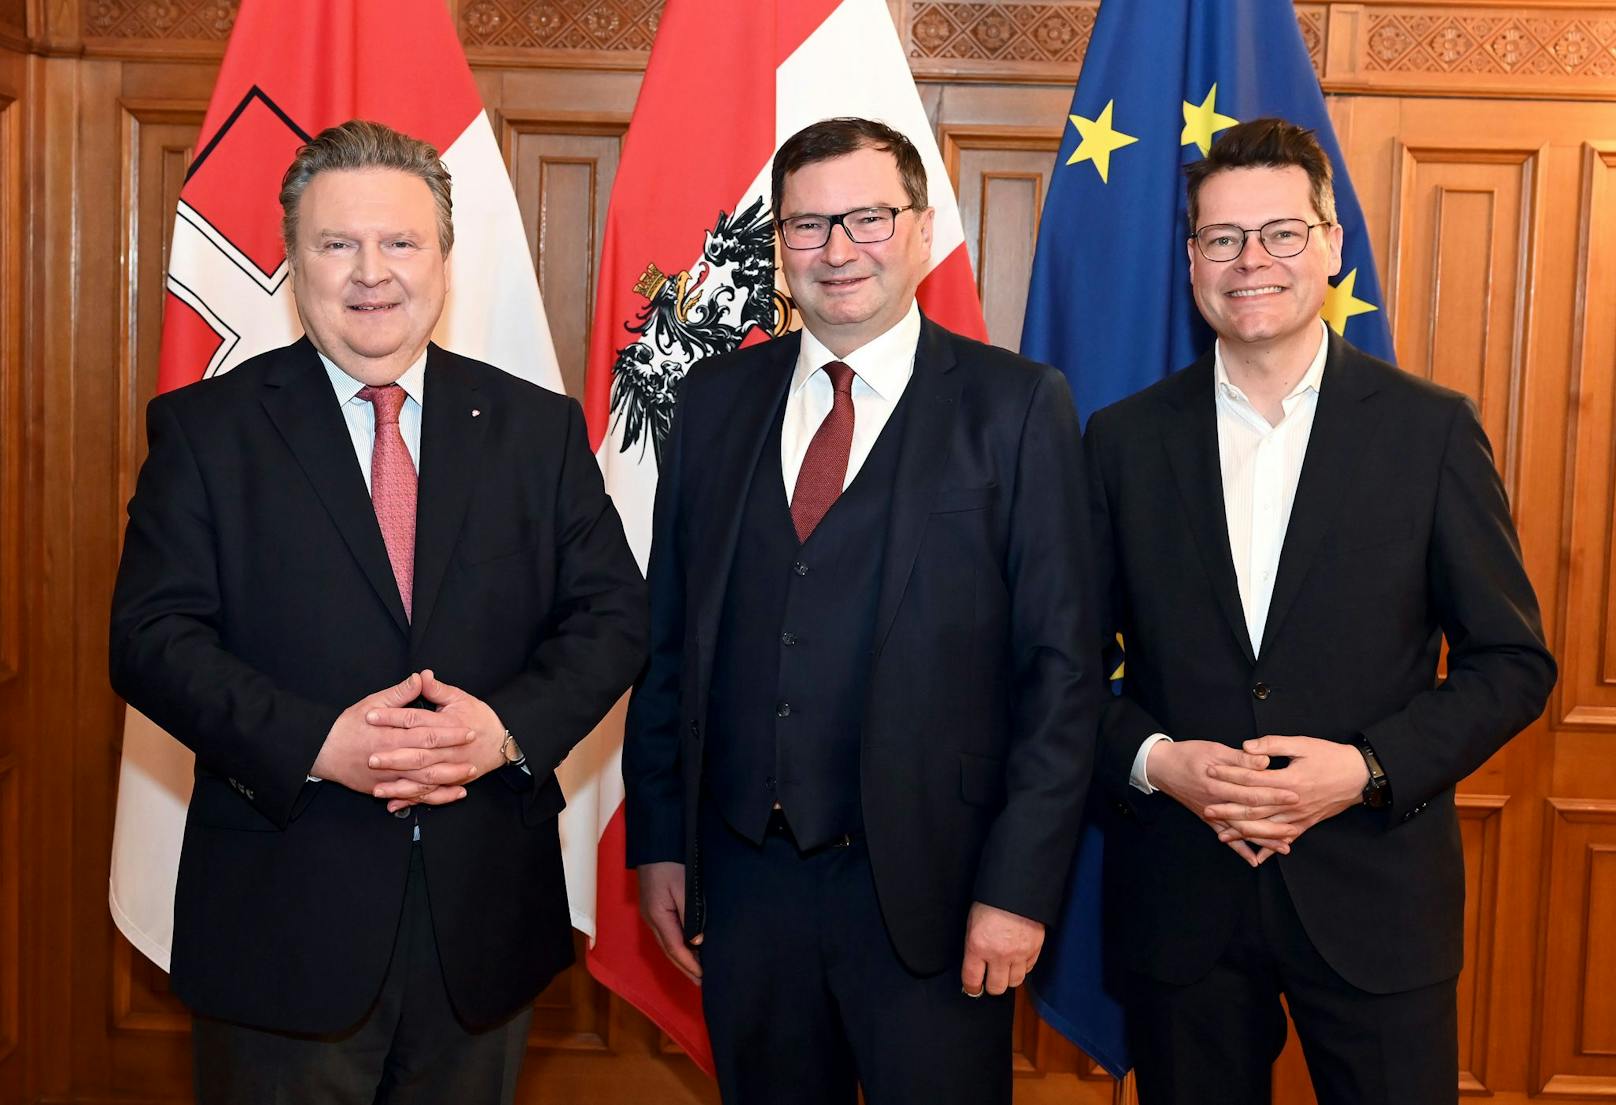 Bürgermeister Michael Ludwig (SPÖ), LK-Wien-Präsident Norbert Walter und Umweltstadtrat Jürgen Czernohorszky (SPÖ) (v.l.n.r)